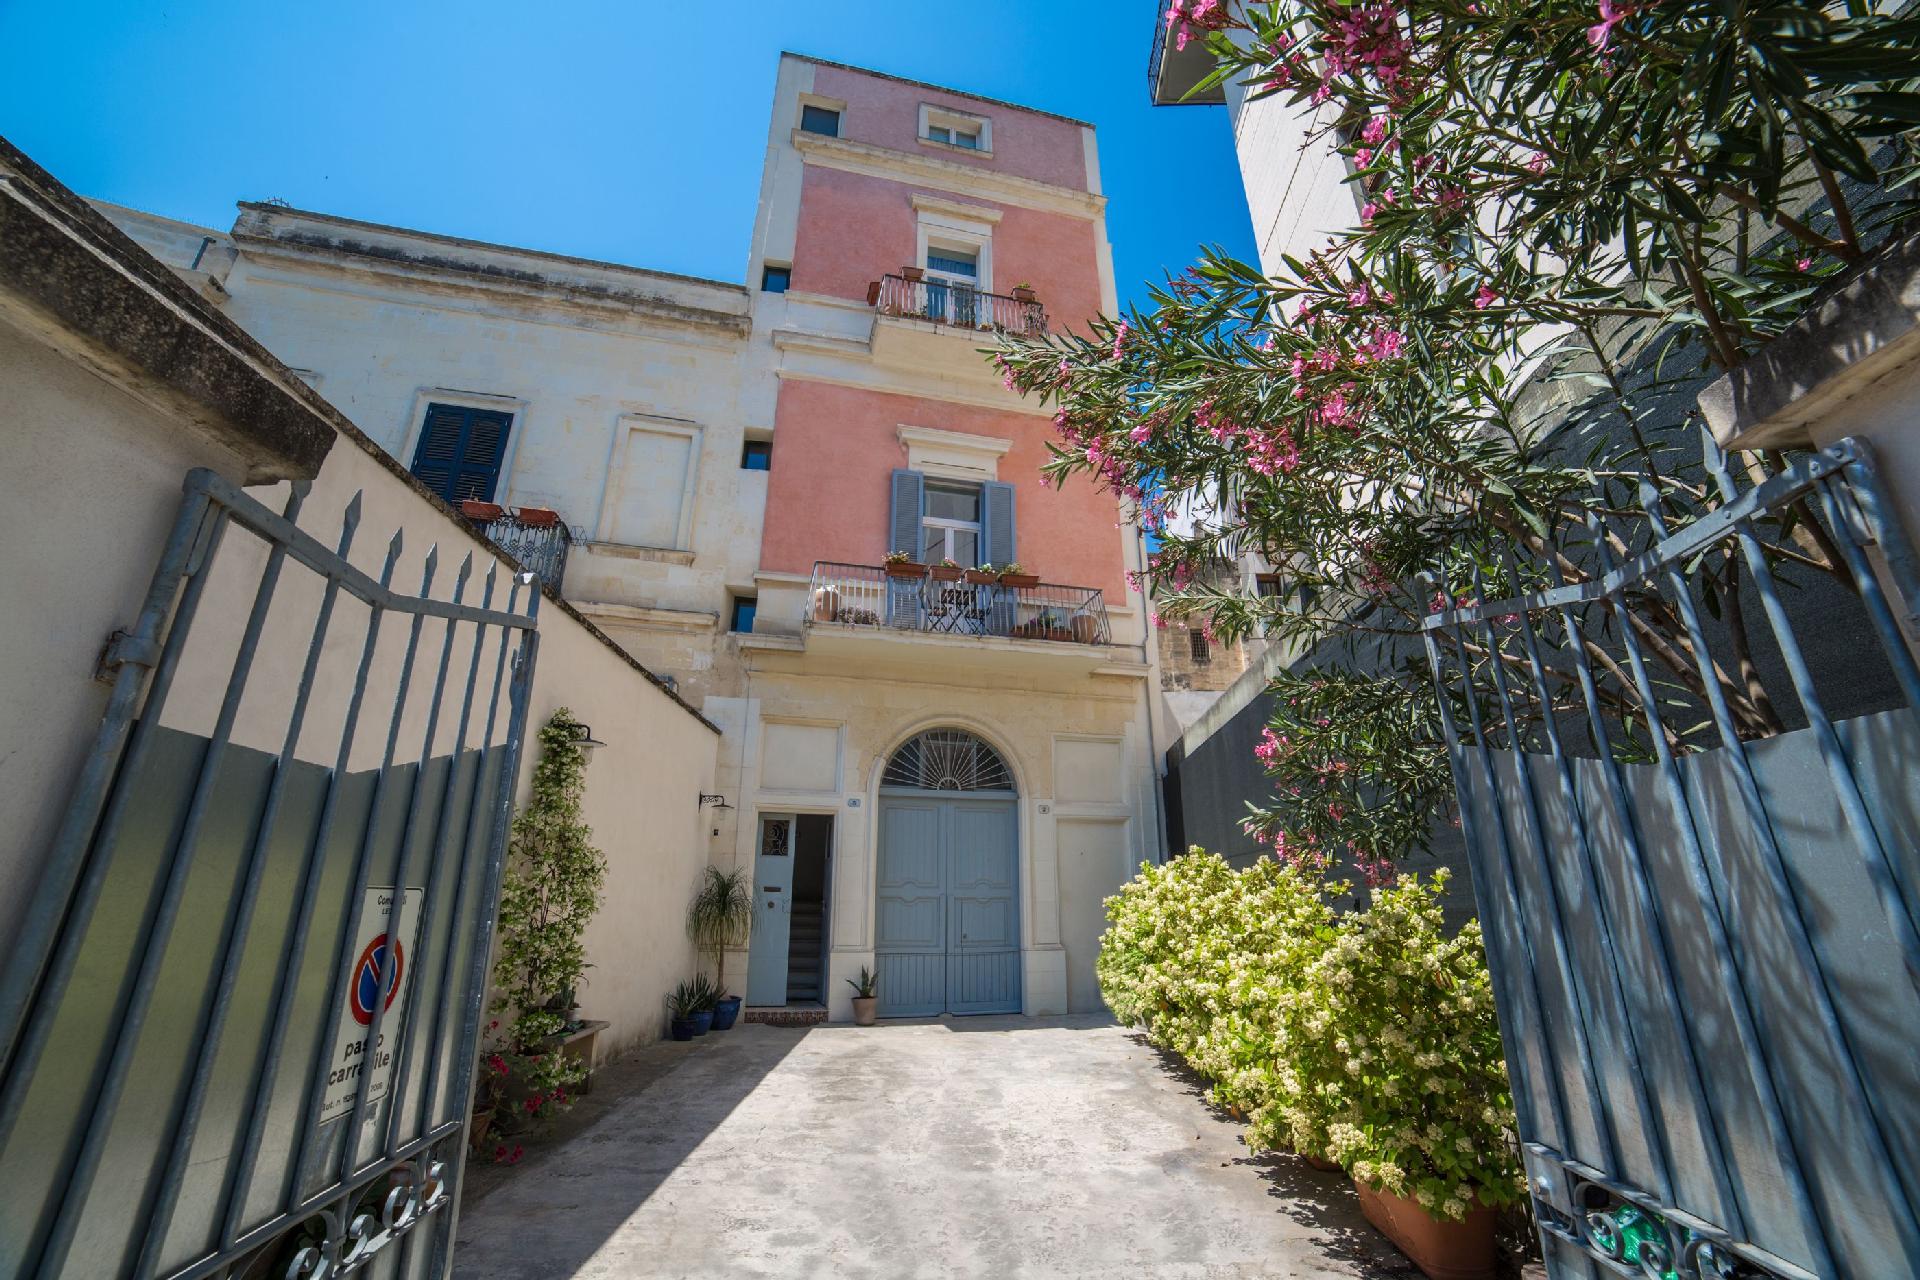 Appartement in Lecce mit Eigenem Balkon   Lecce